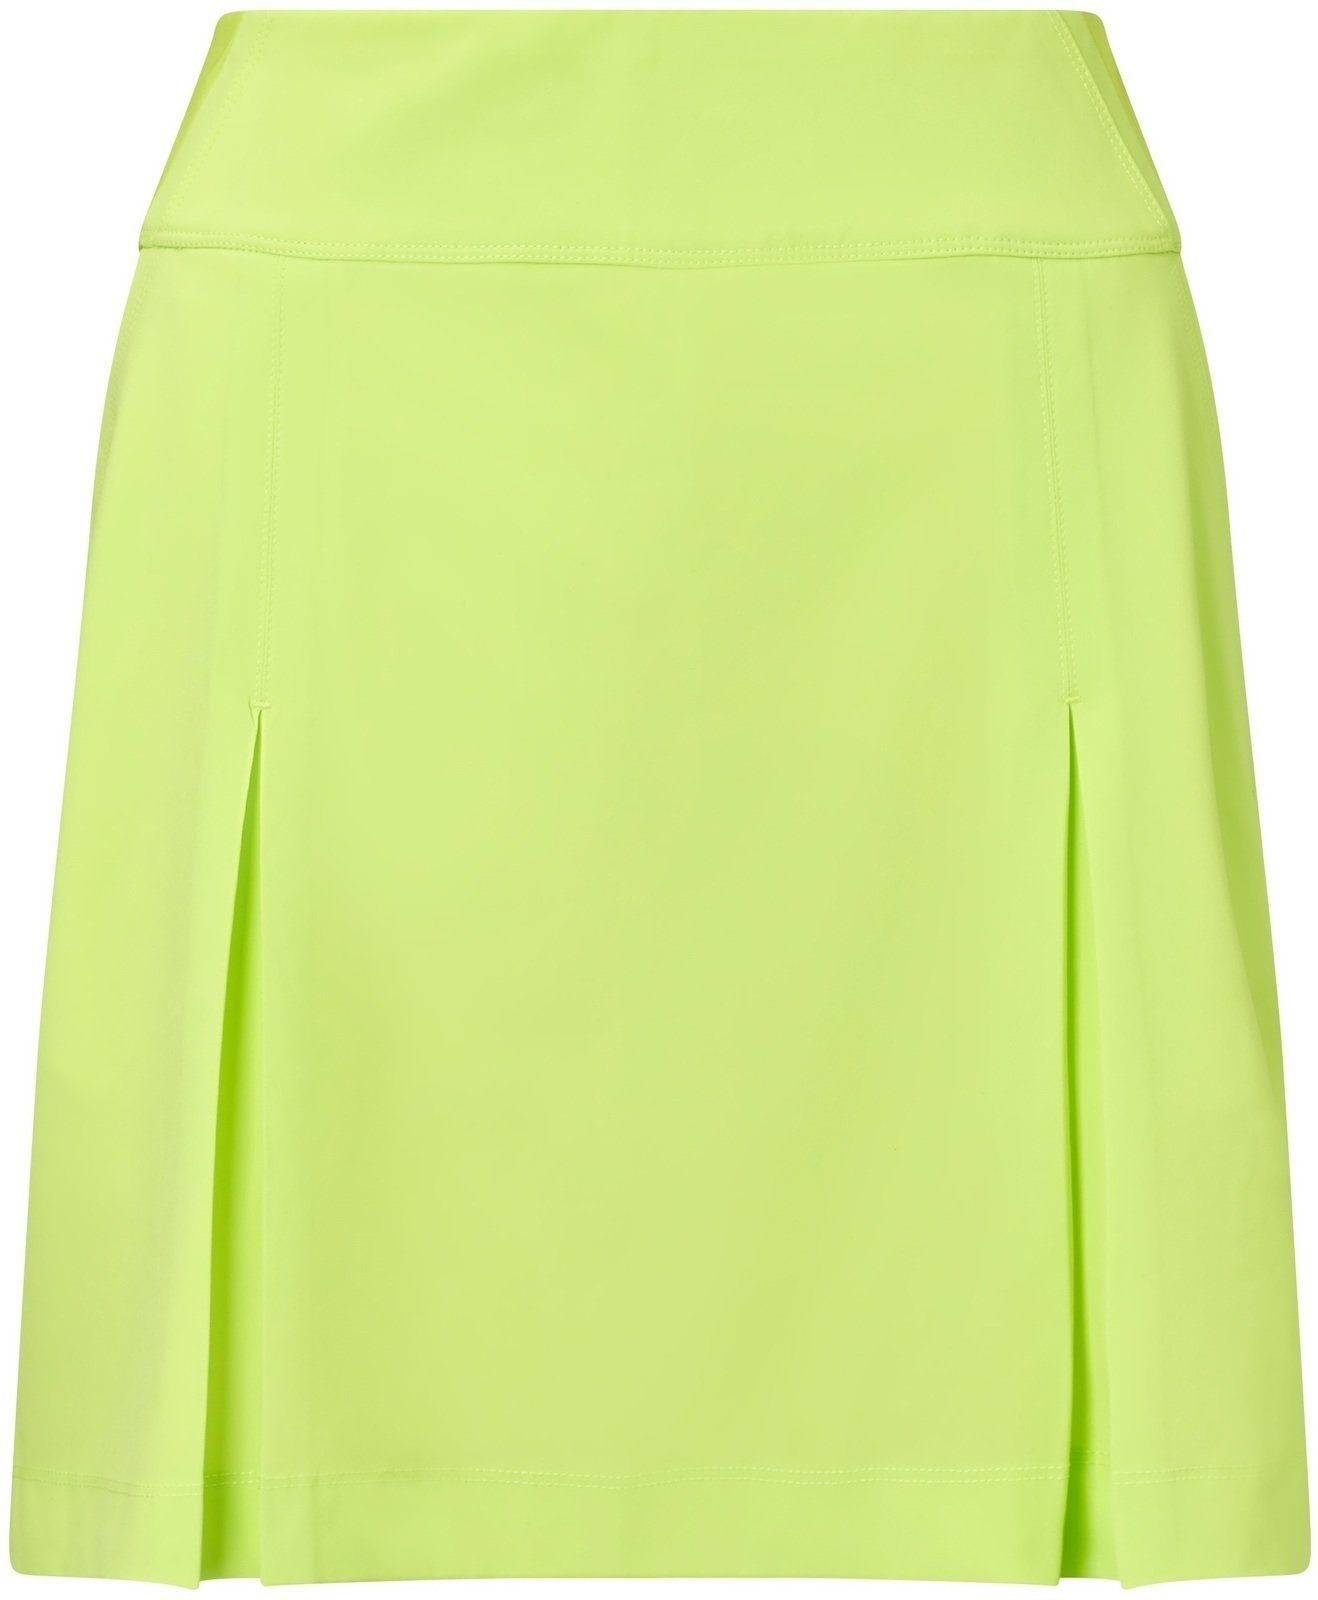 Skirt / Dress Callaway 18 All Day Skort Sharp Green M Womens